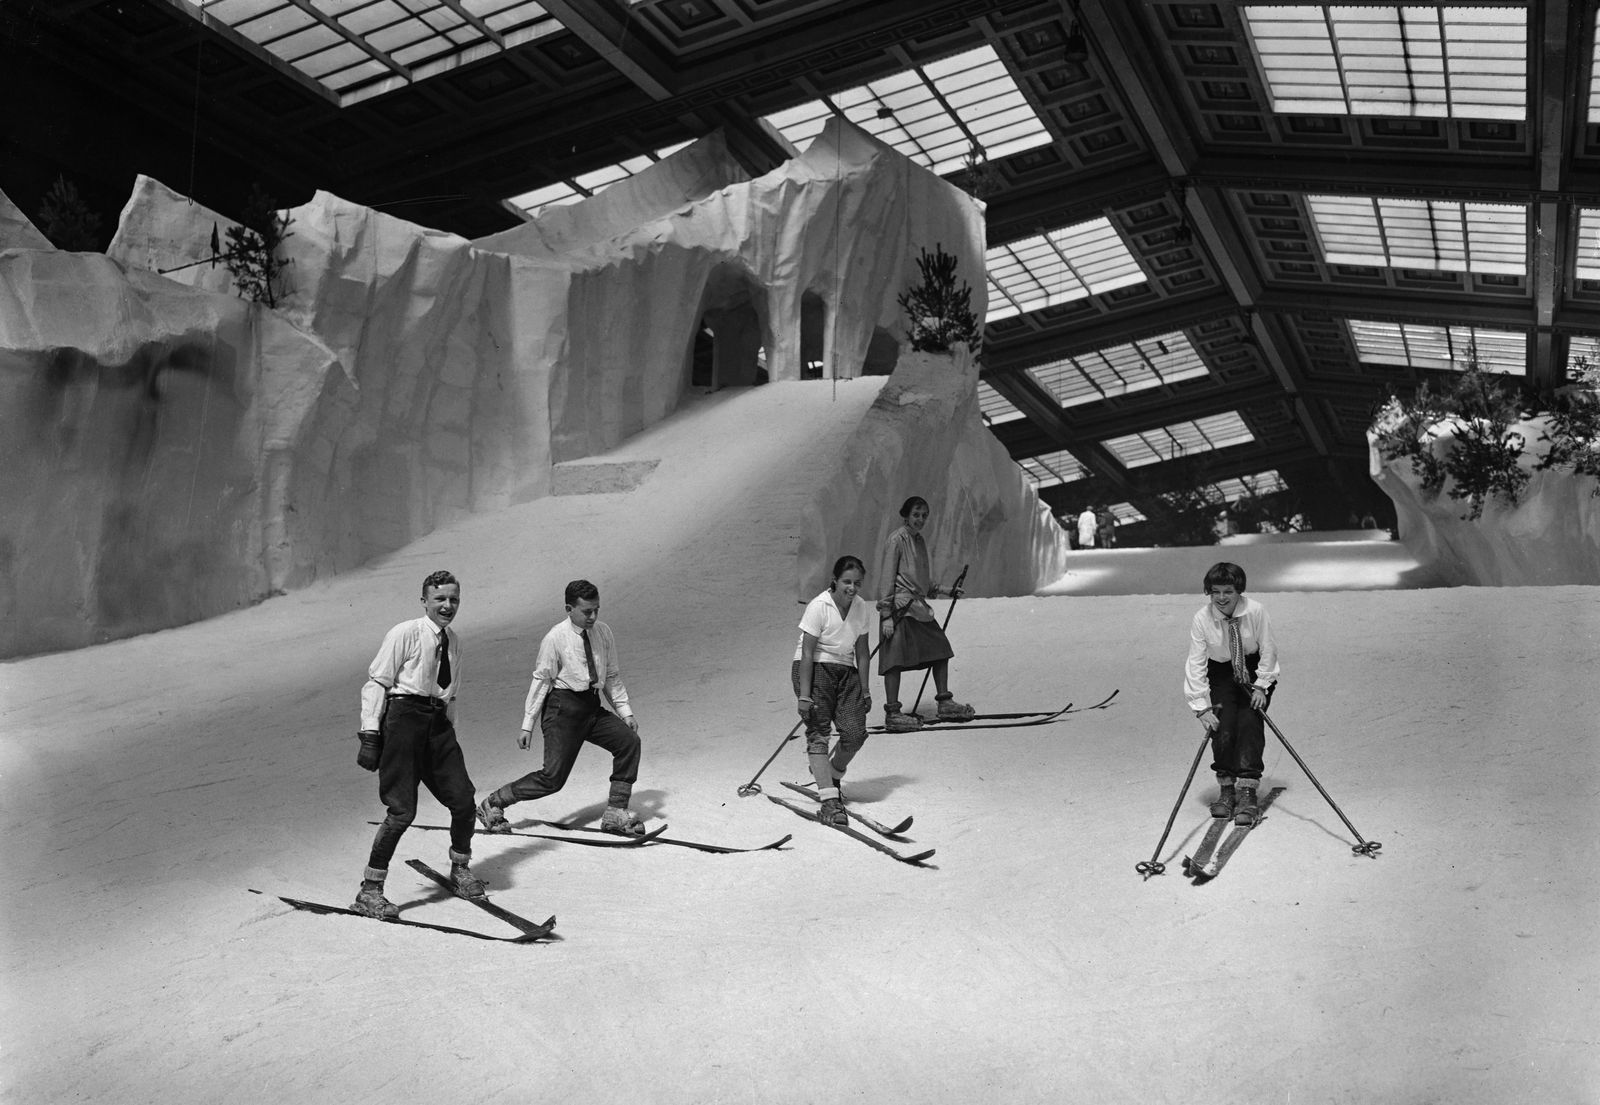 Künstliche Skibahn im Berliner Schneepalast am Kaiserdamm, 1927 © bpk / Kunstbibliothek, SMB / Willy Römer